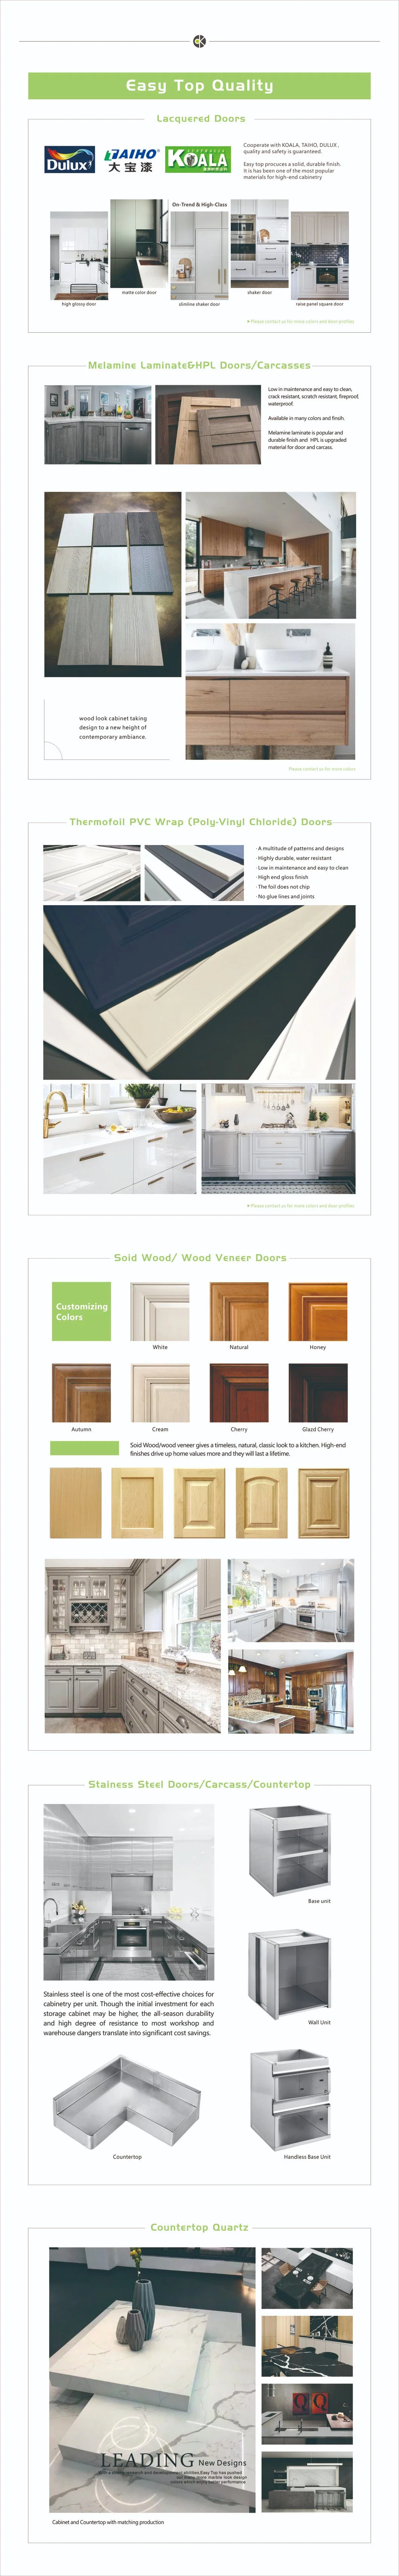 Wood Grain Melamine Fiber Chipboard Mirror Splashback White Wall Solid Wood Kitchen Safety Cabinets